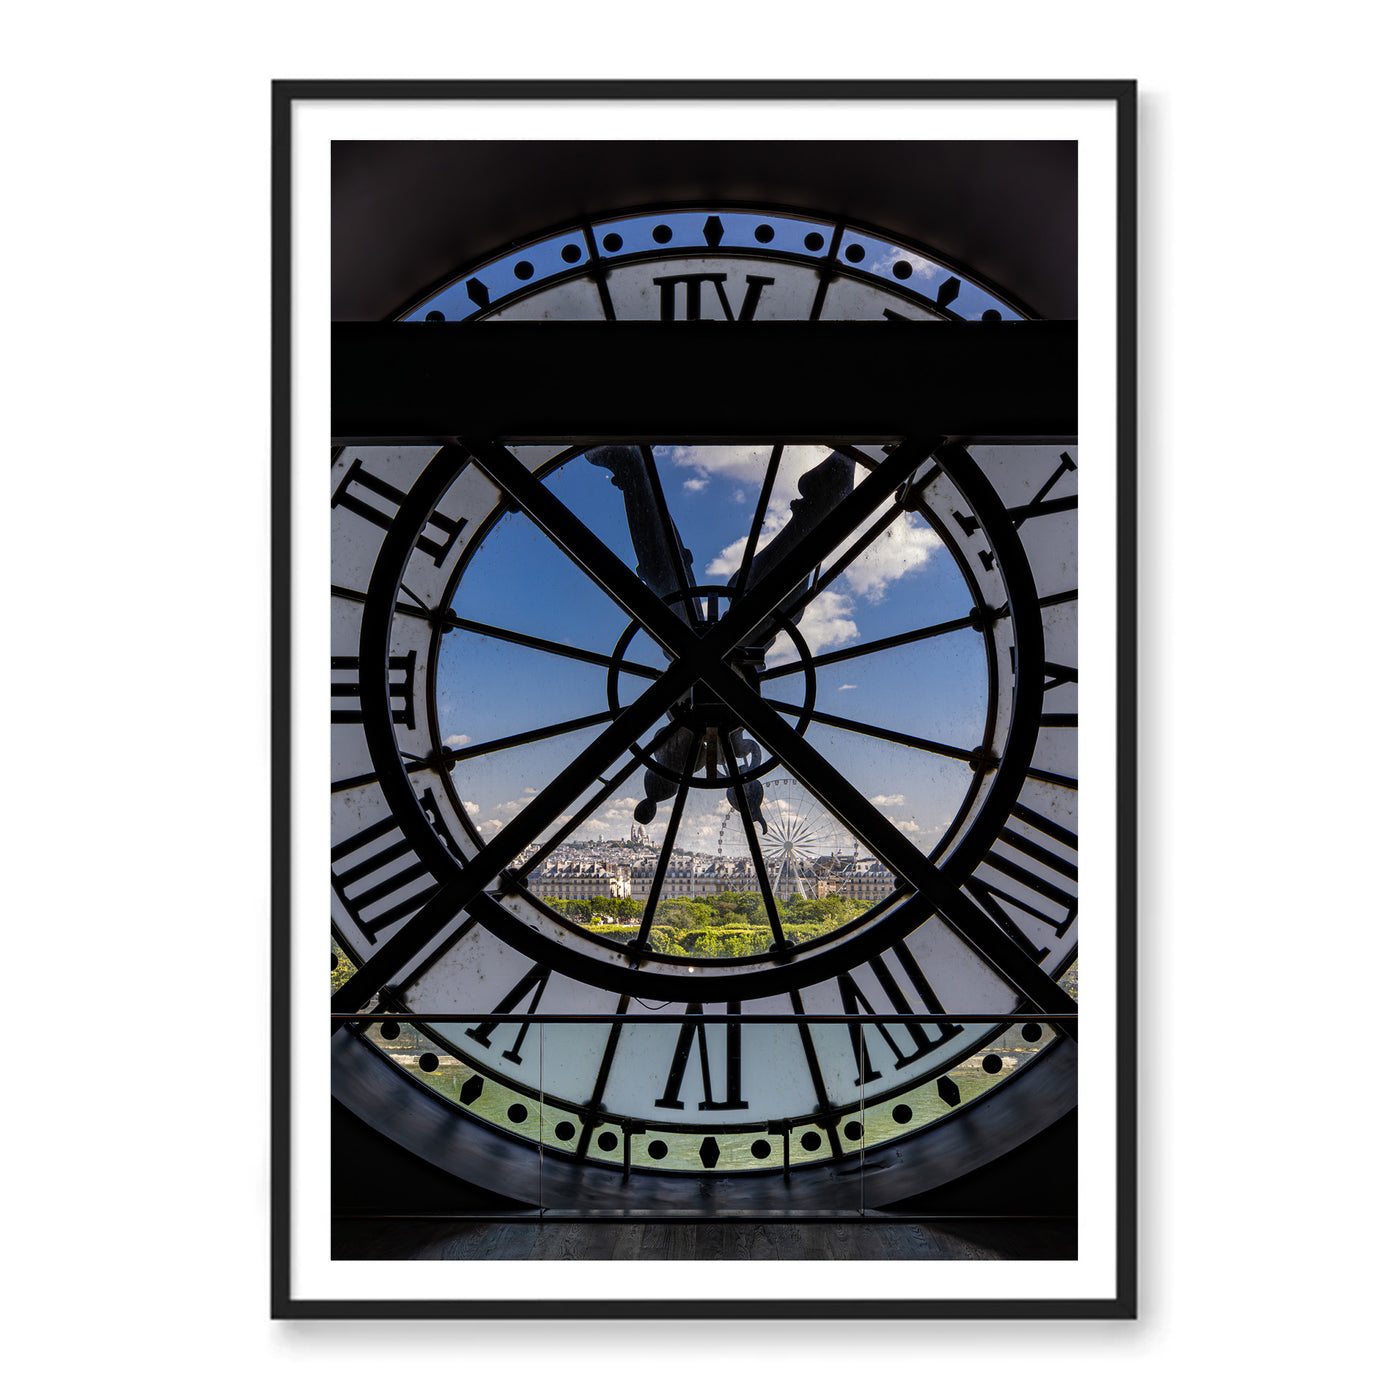 Black framed photo of large clock